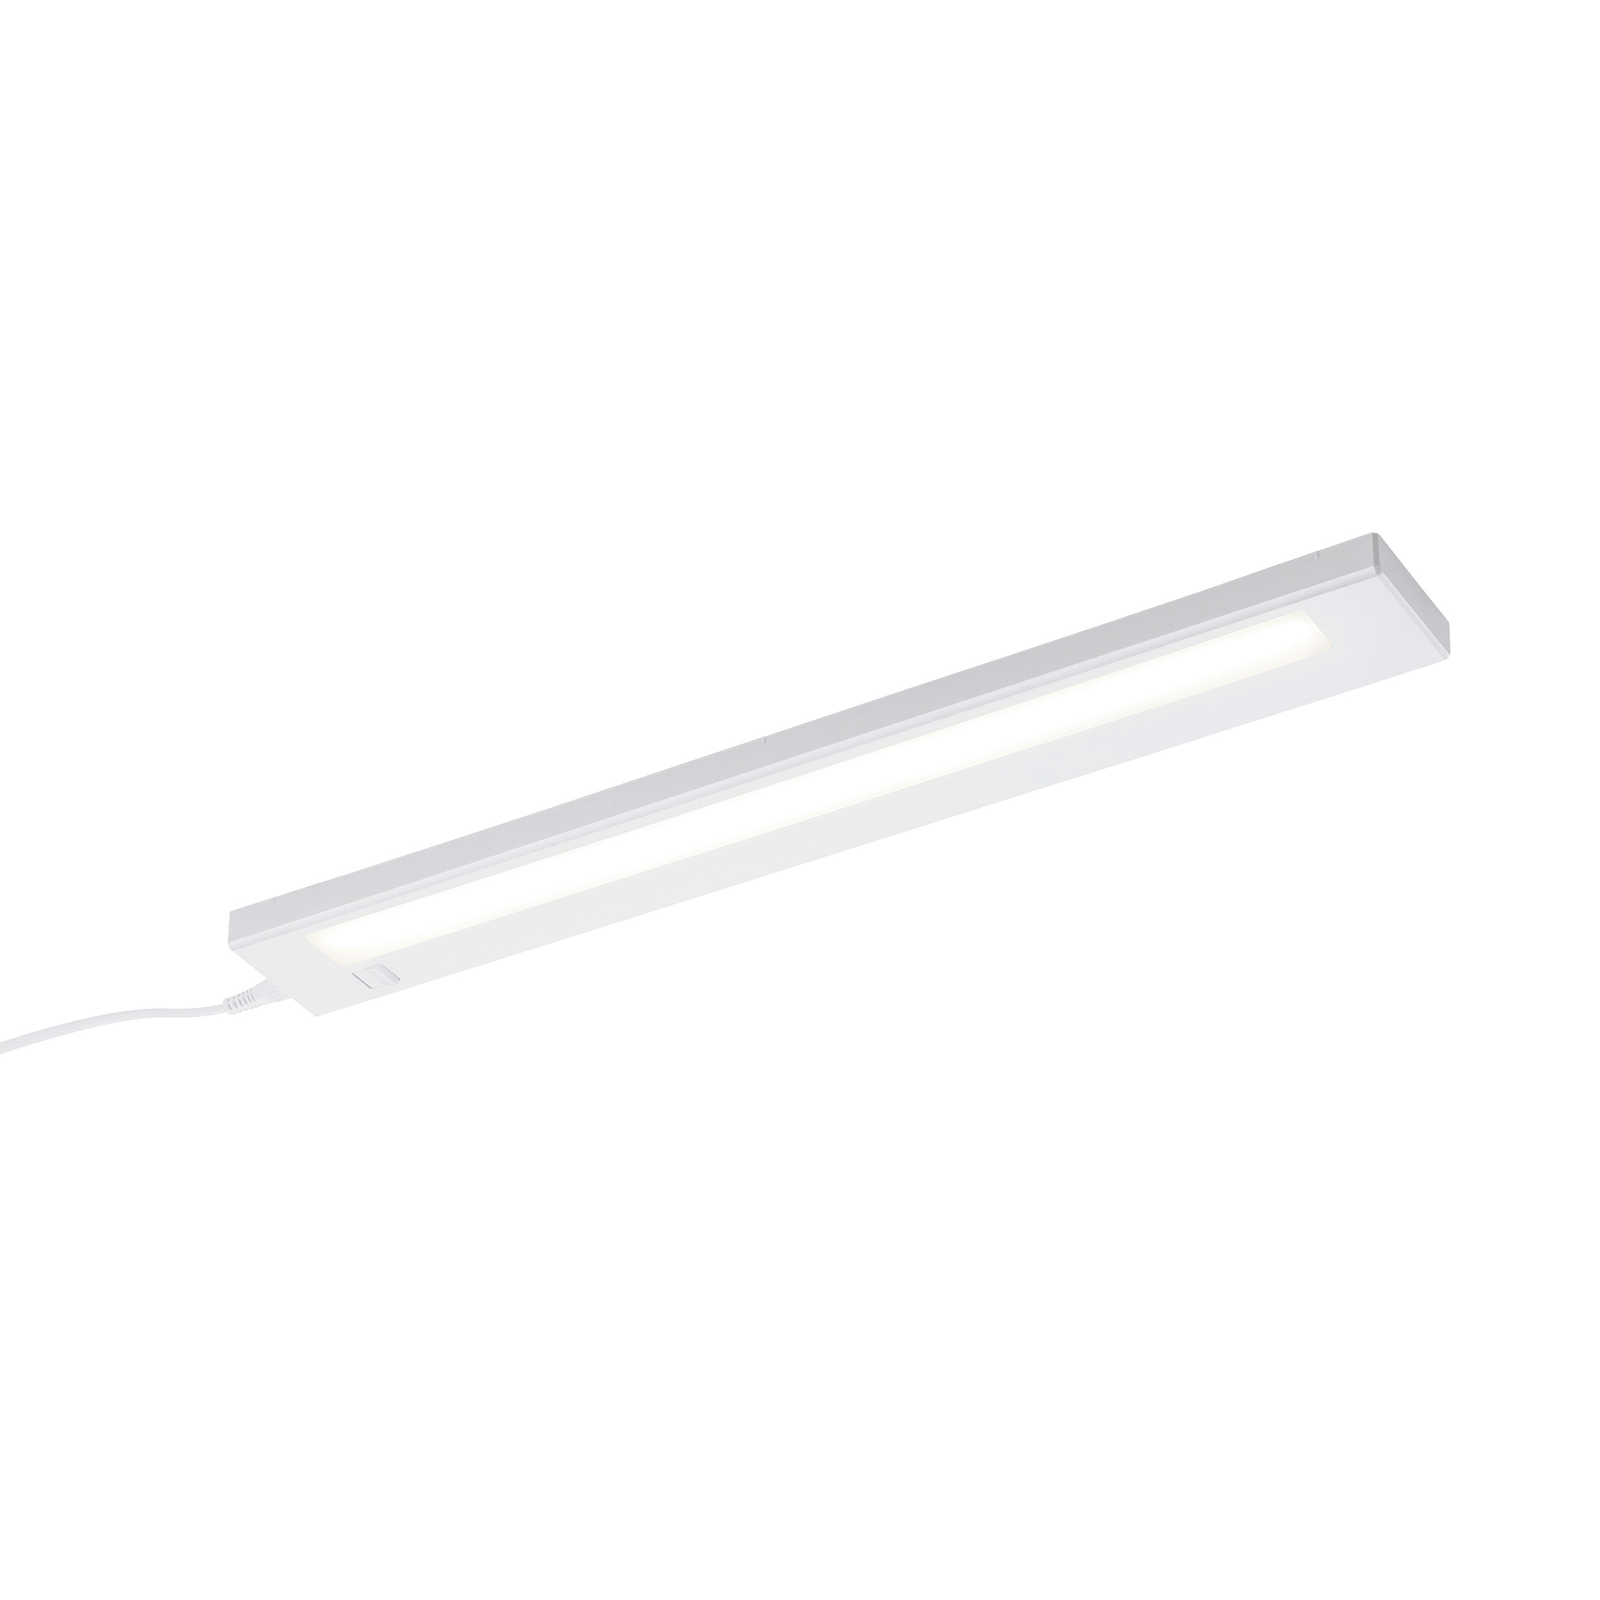 Alino LED under-cabinet light, white, length 55 cm